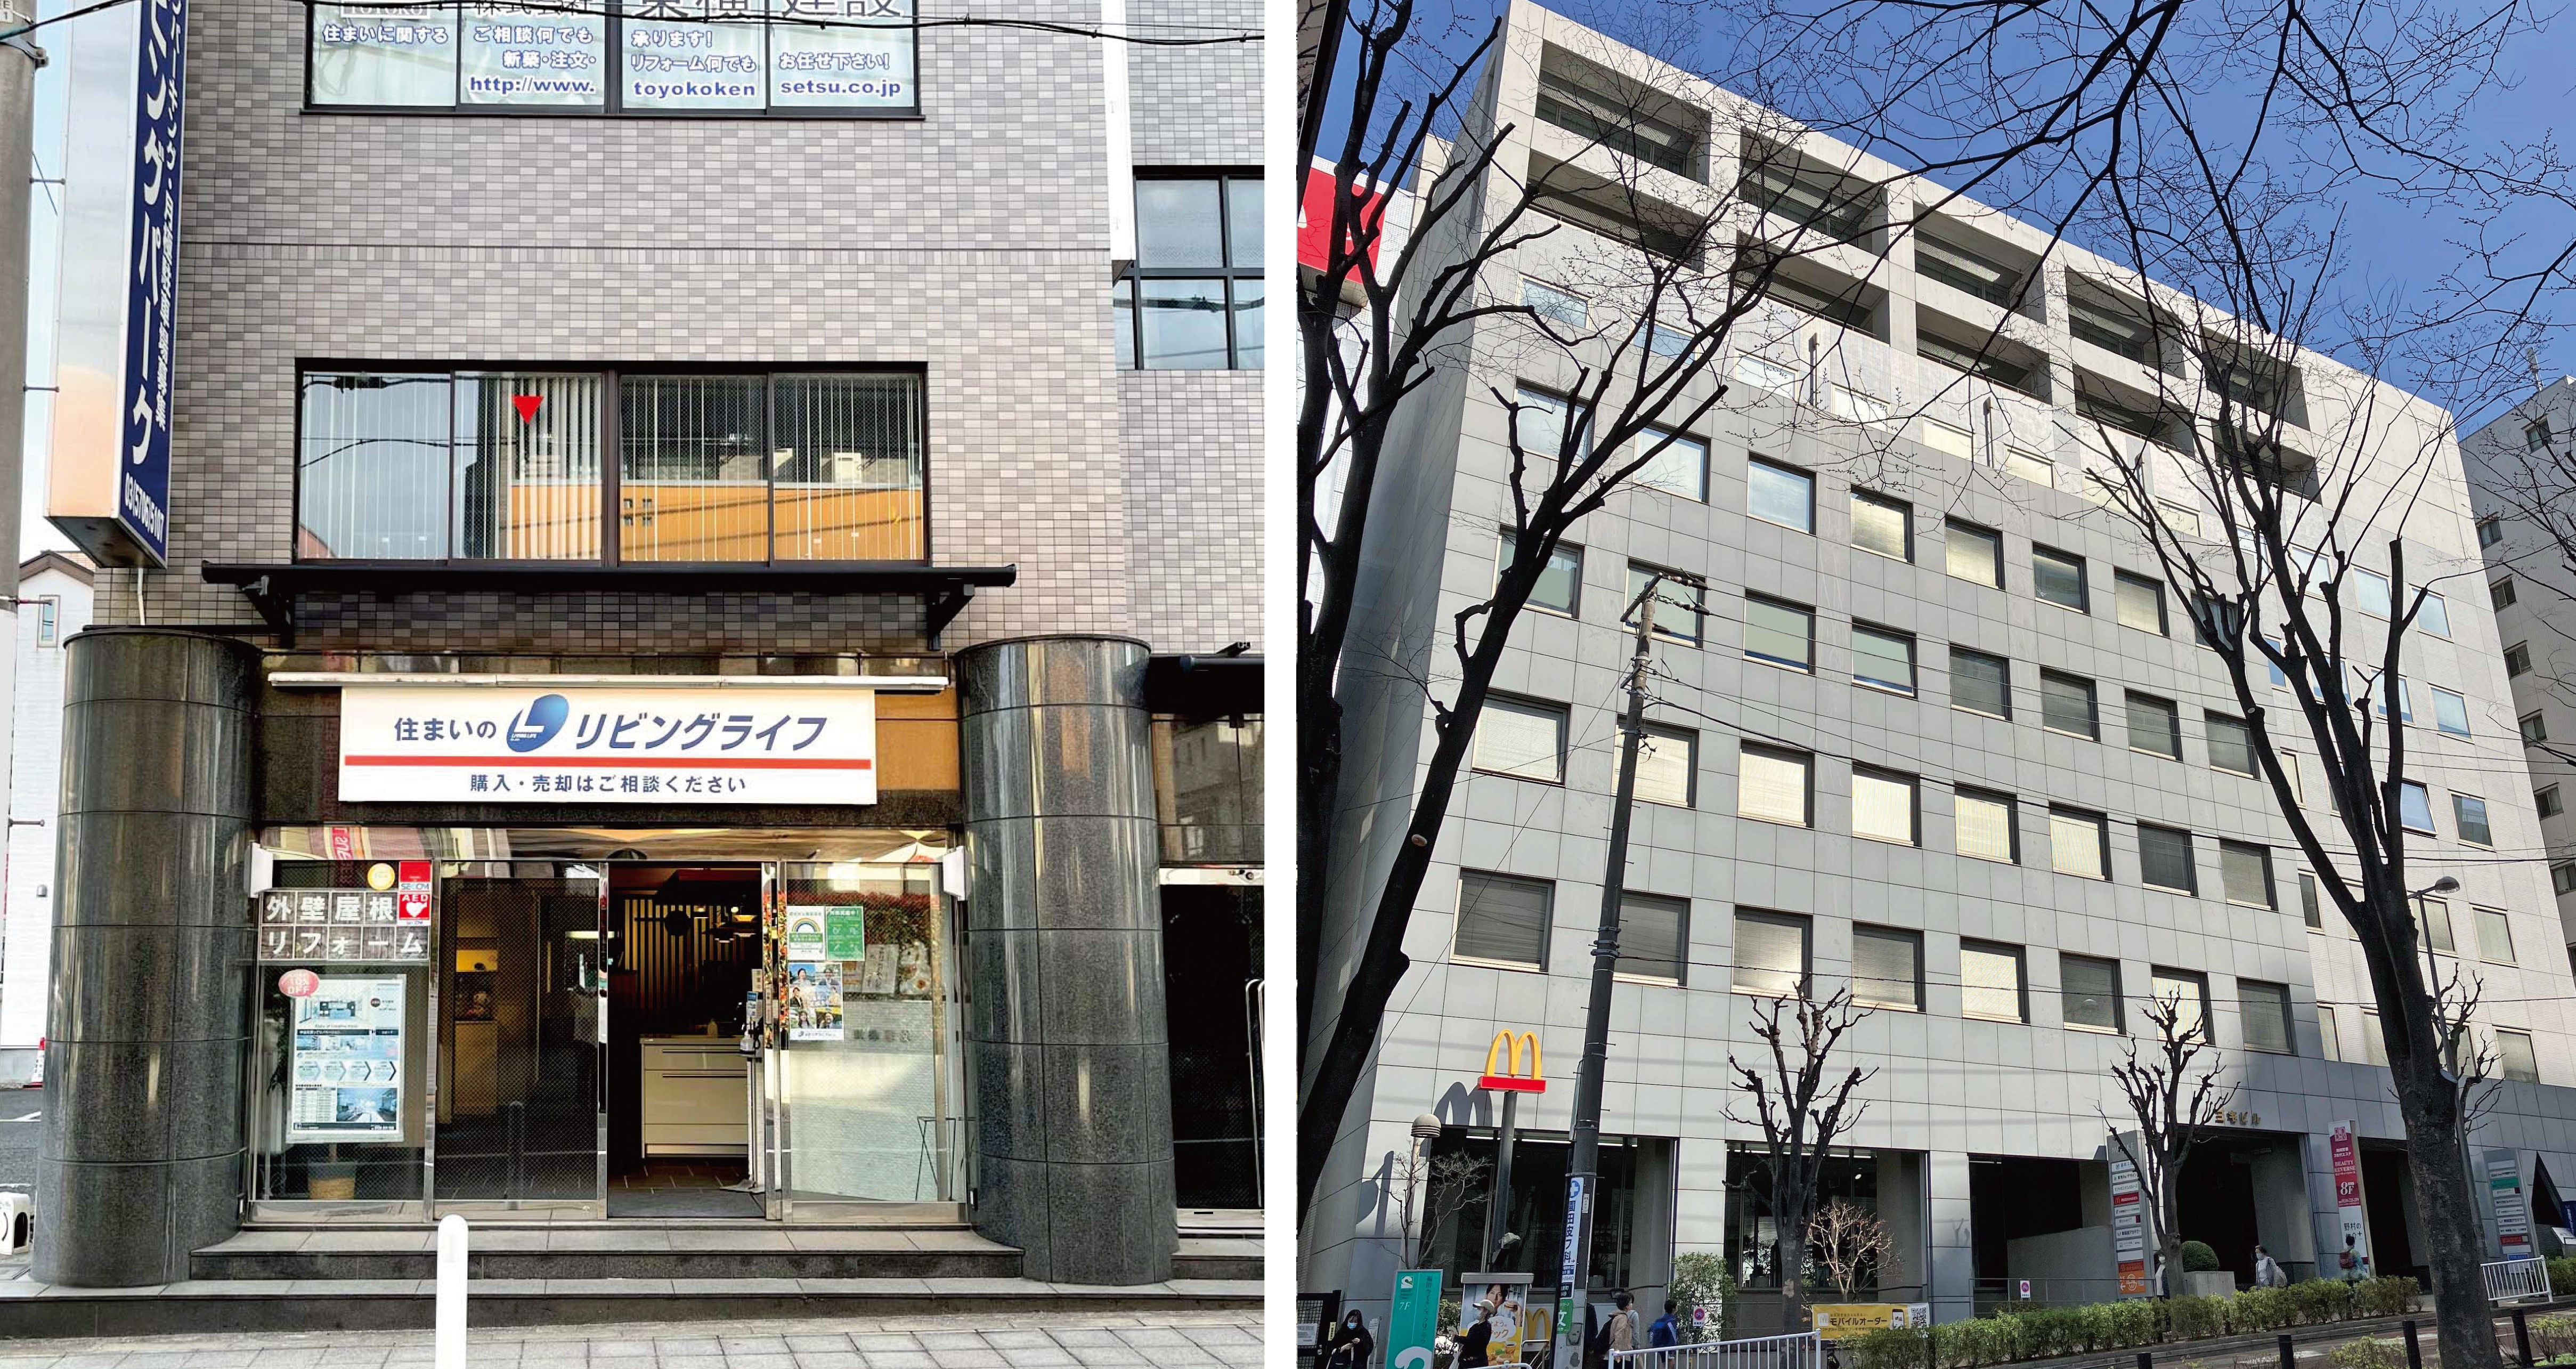 リビングライフ、尾山台と東戸塚に不動産売買2店舗を4月にオープン。 広域で住宅を探す方の増加に対応、丁寧なサービスを提供し続けるために。